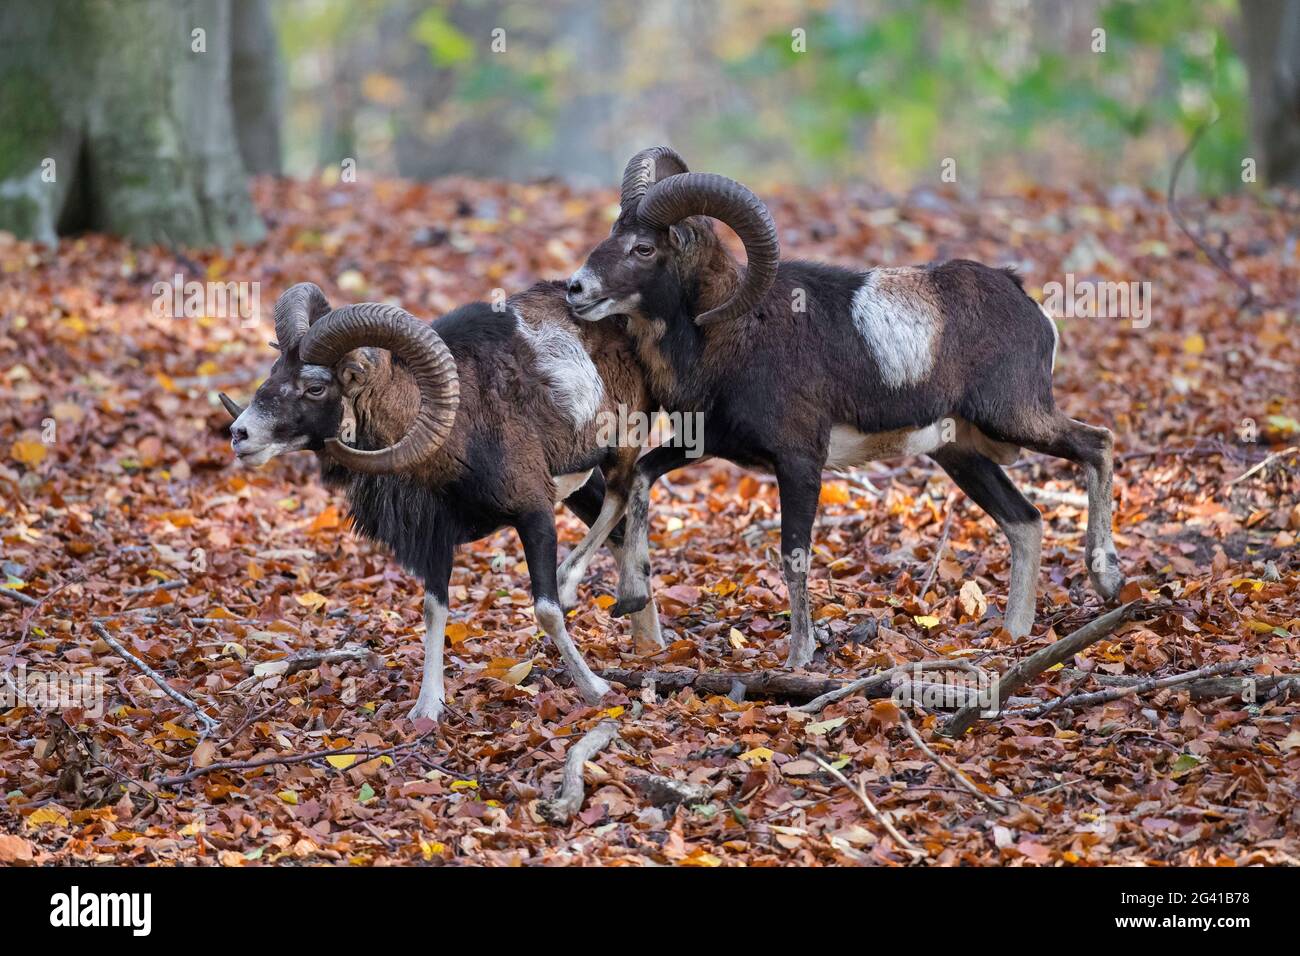 Mouflons européens (Ovis gmelini musimon / Ovis ammon / Ovis orientalis musimon) deux béliers / mâles avec de grandes cornes pendant la rut en automne en forêt Banque D'Images